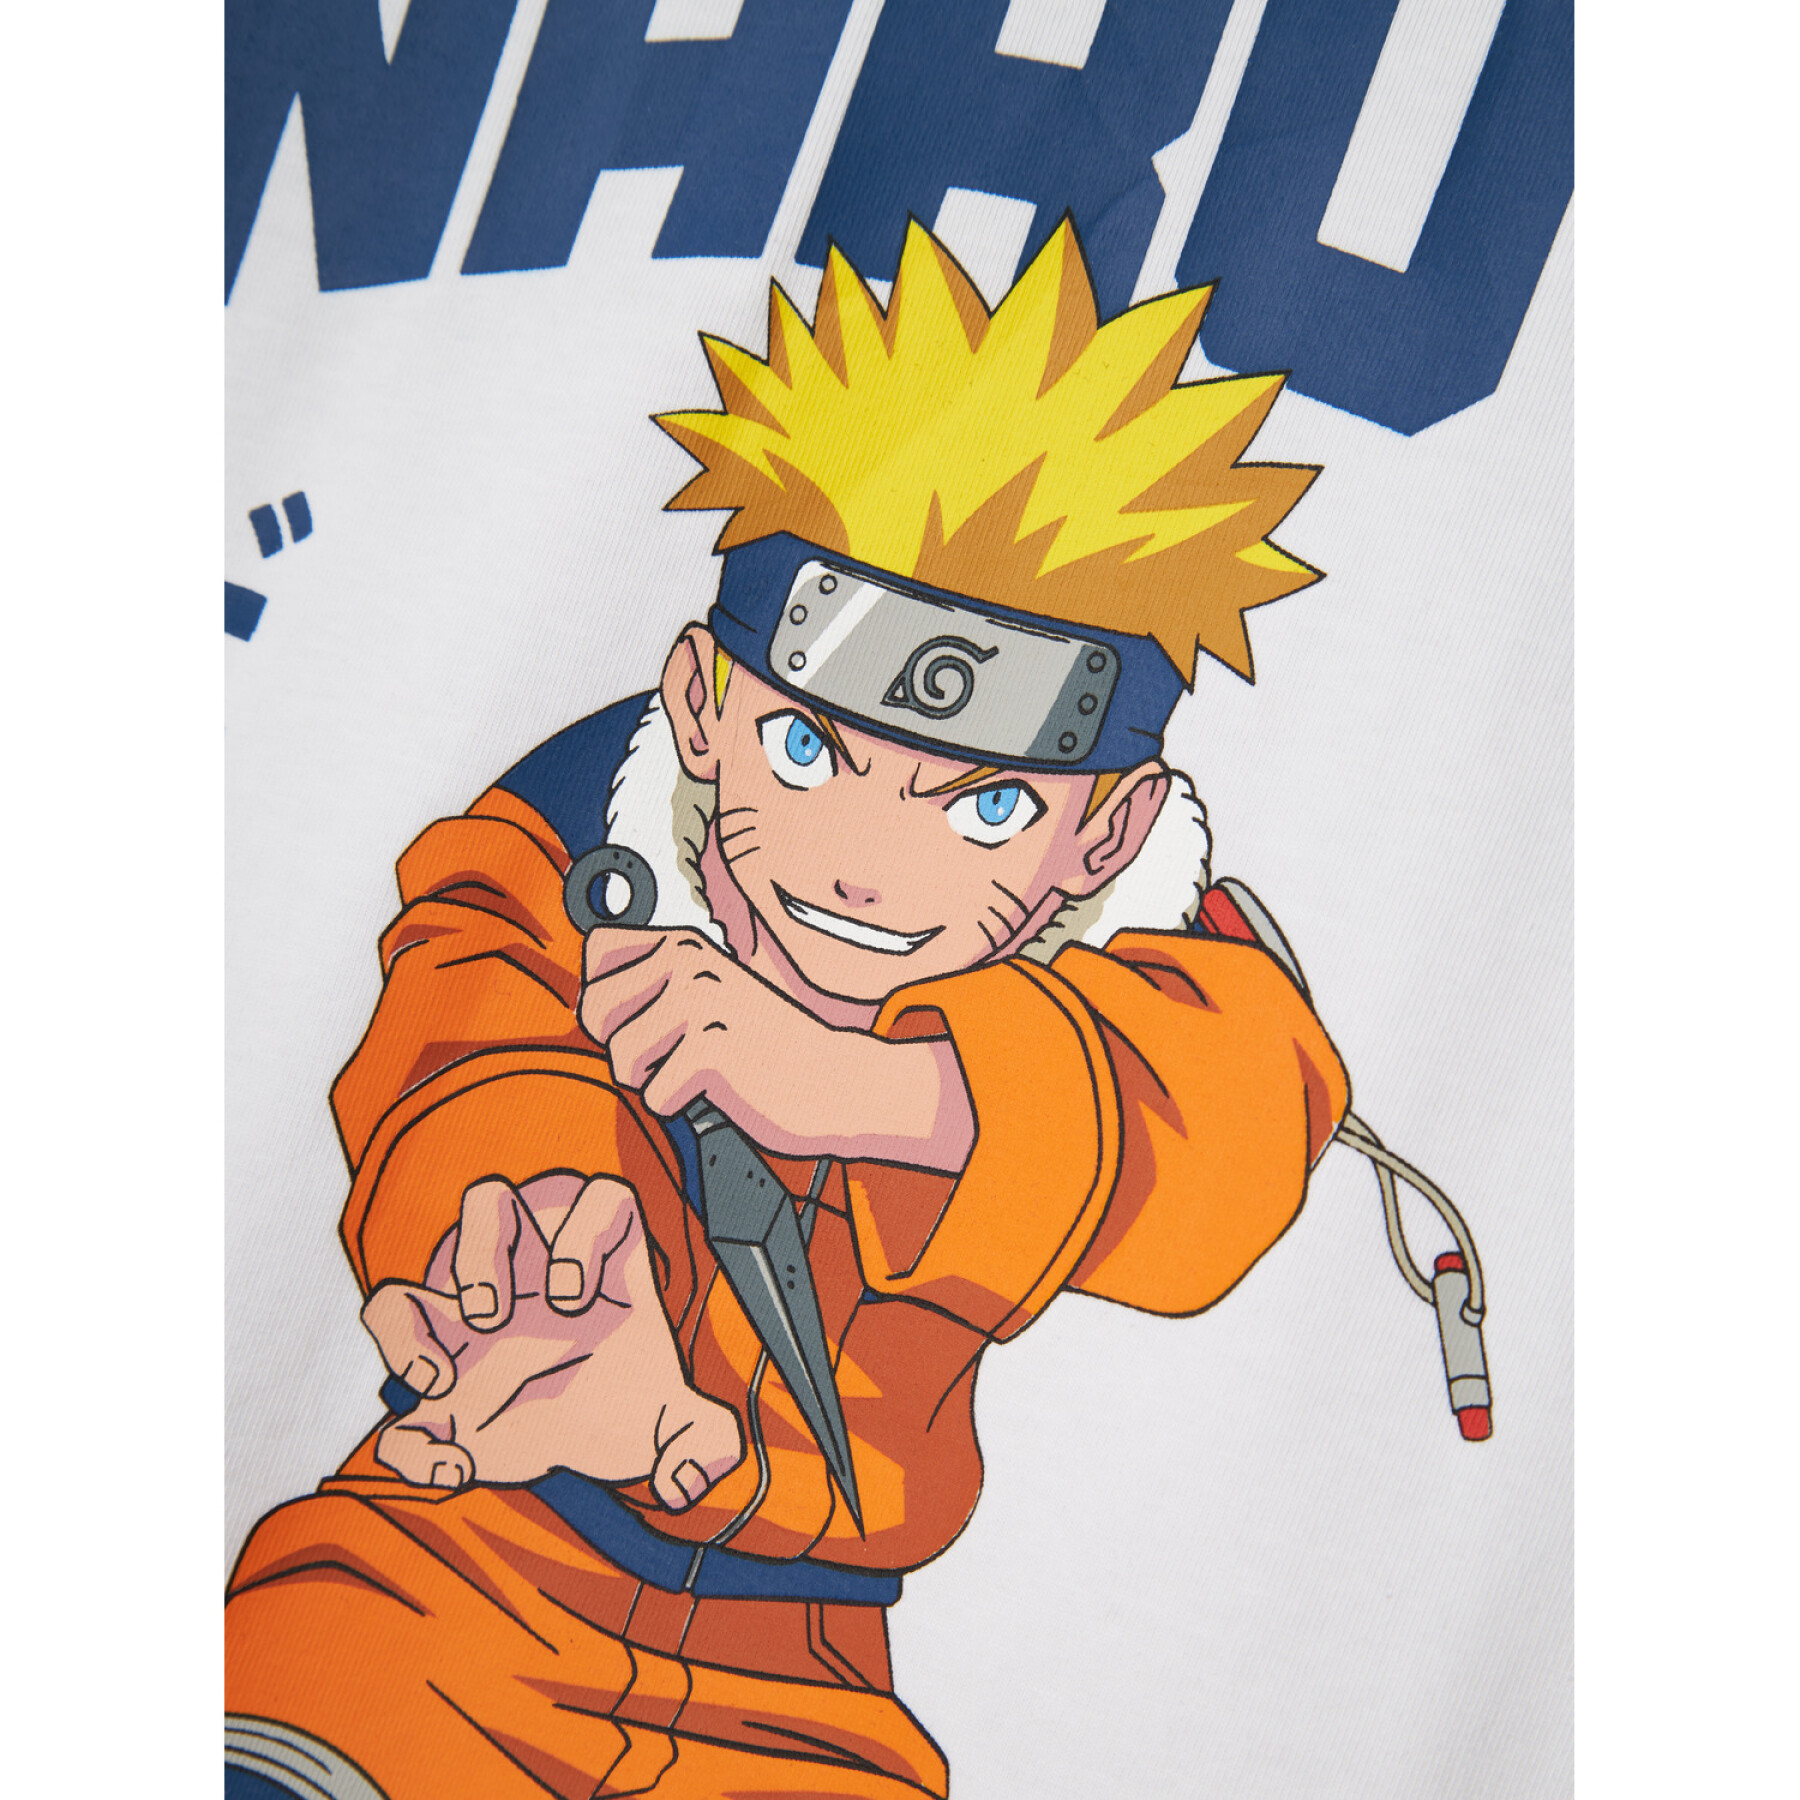 Camiseta infantil Name it Macar Naruto